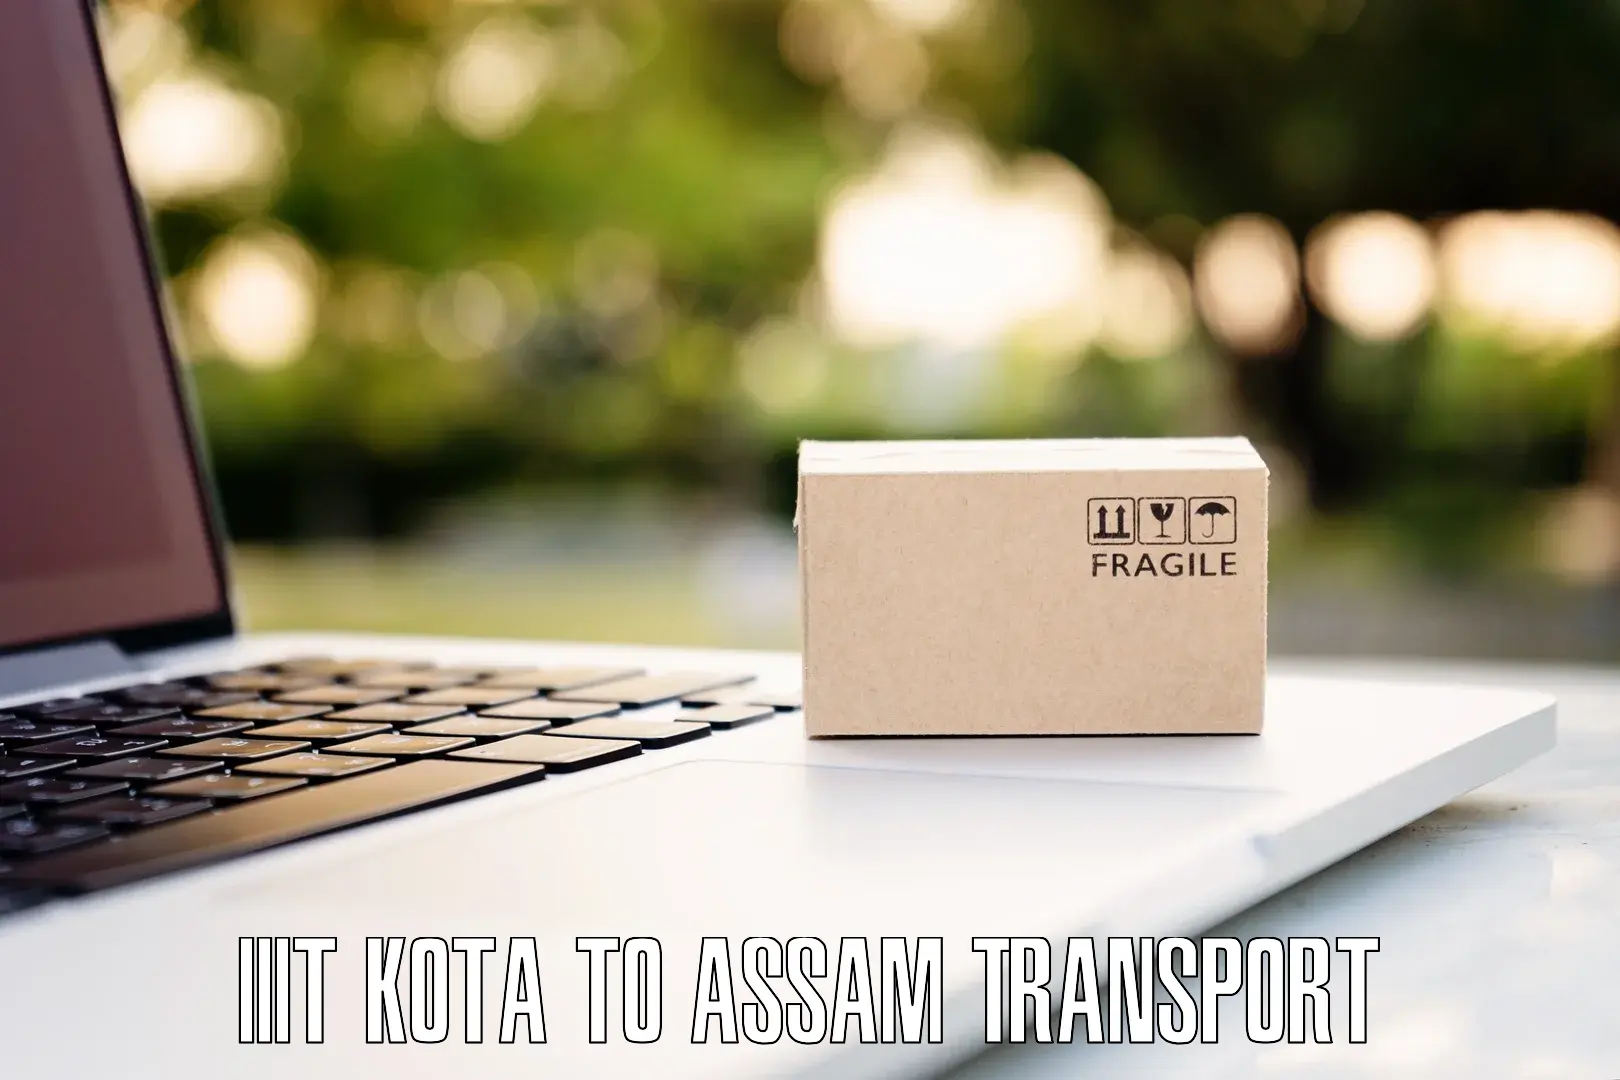 Road transport online services in IIIT Kota to Hajo